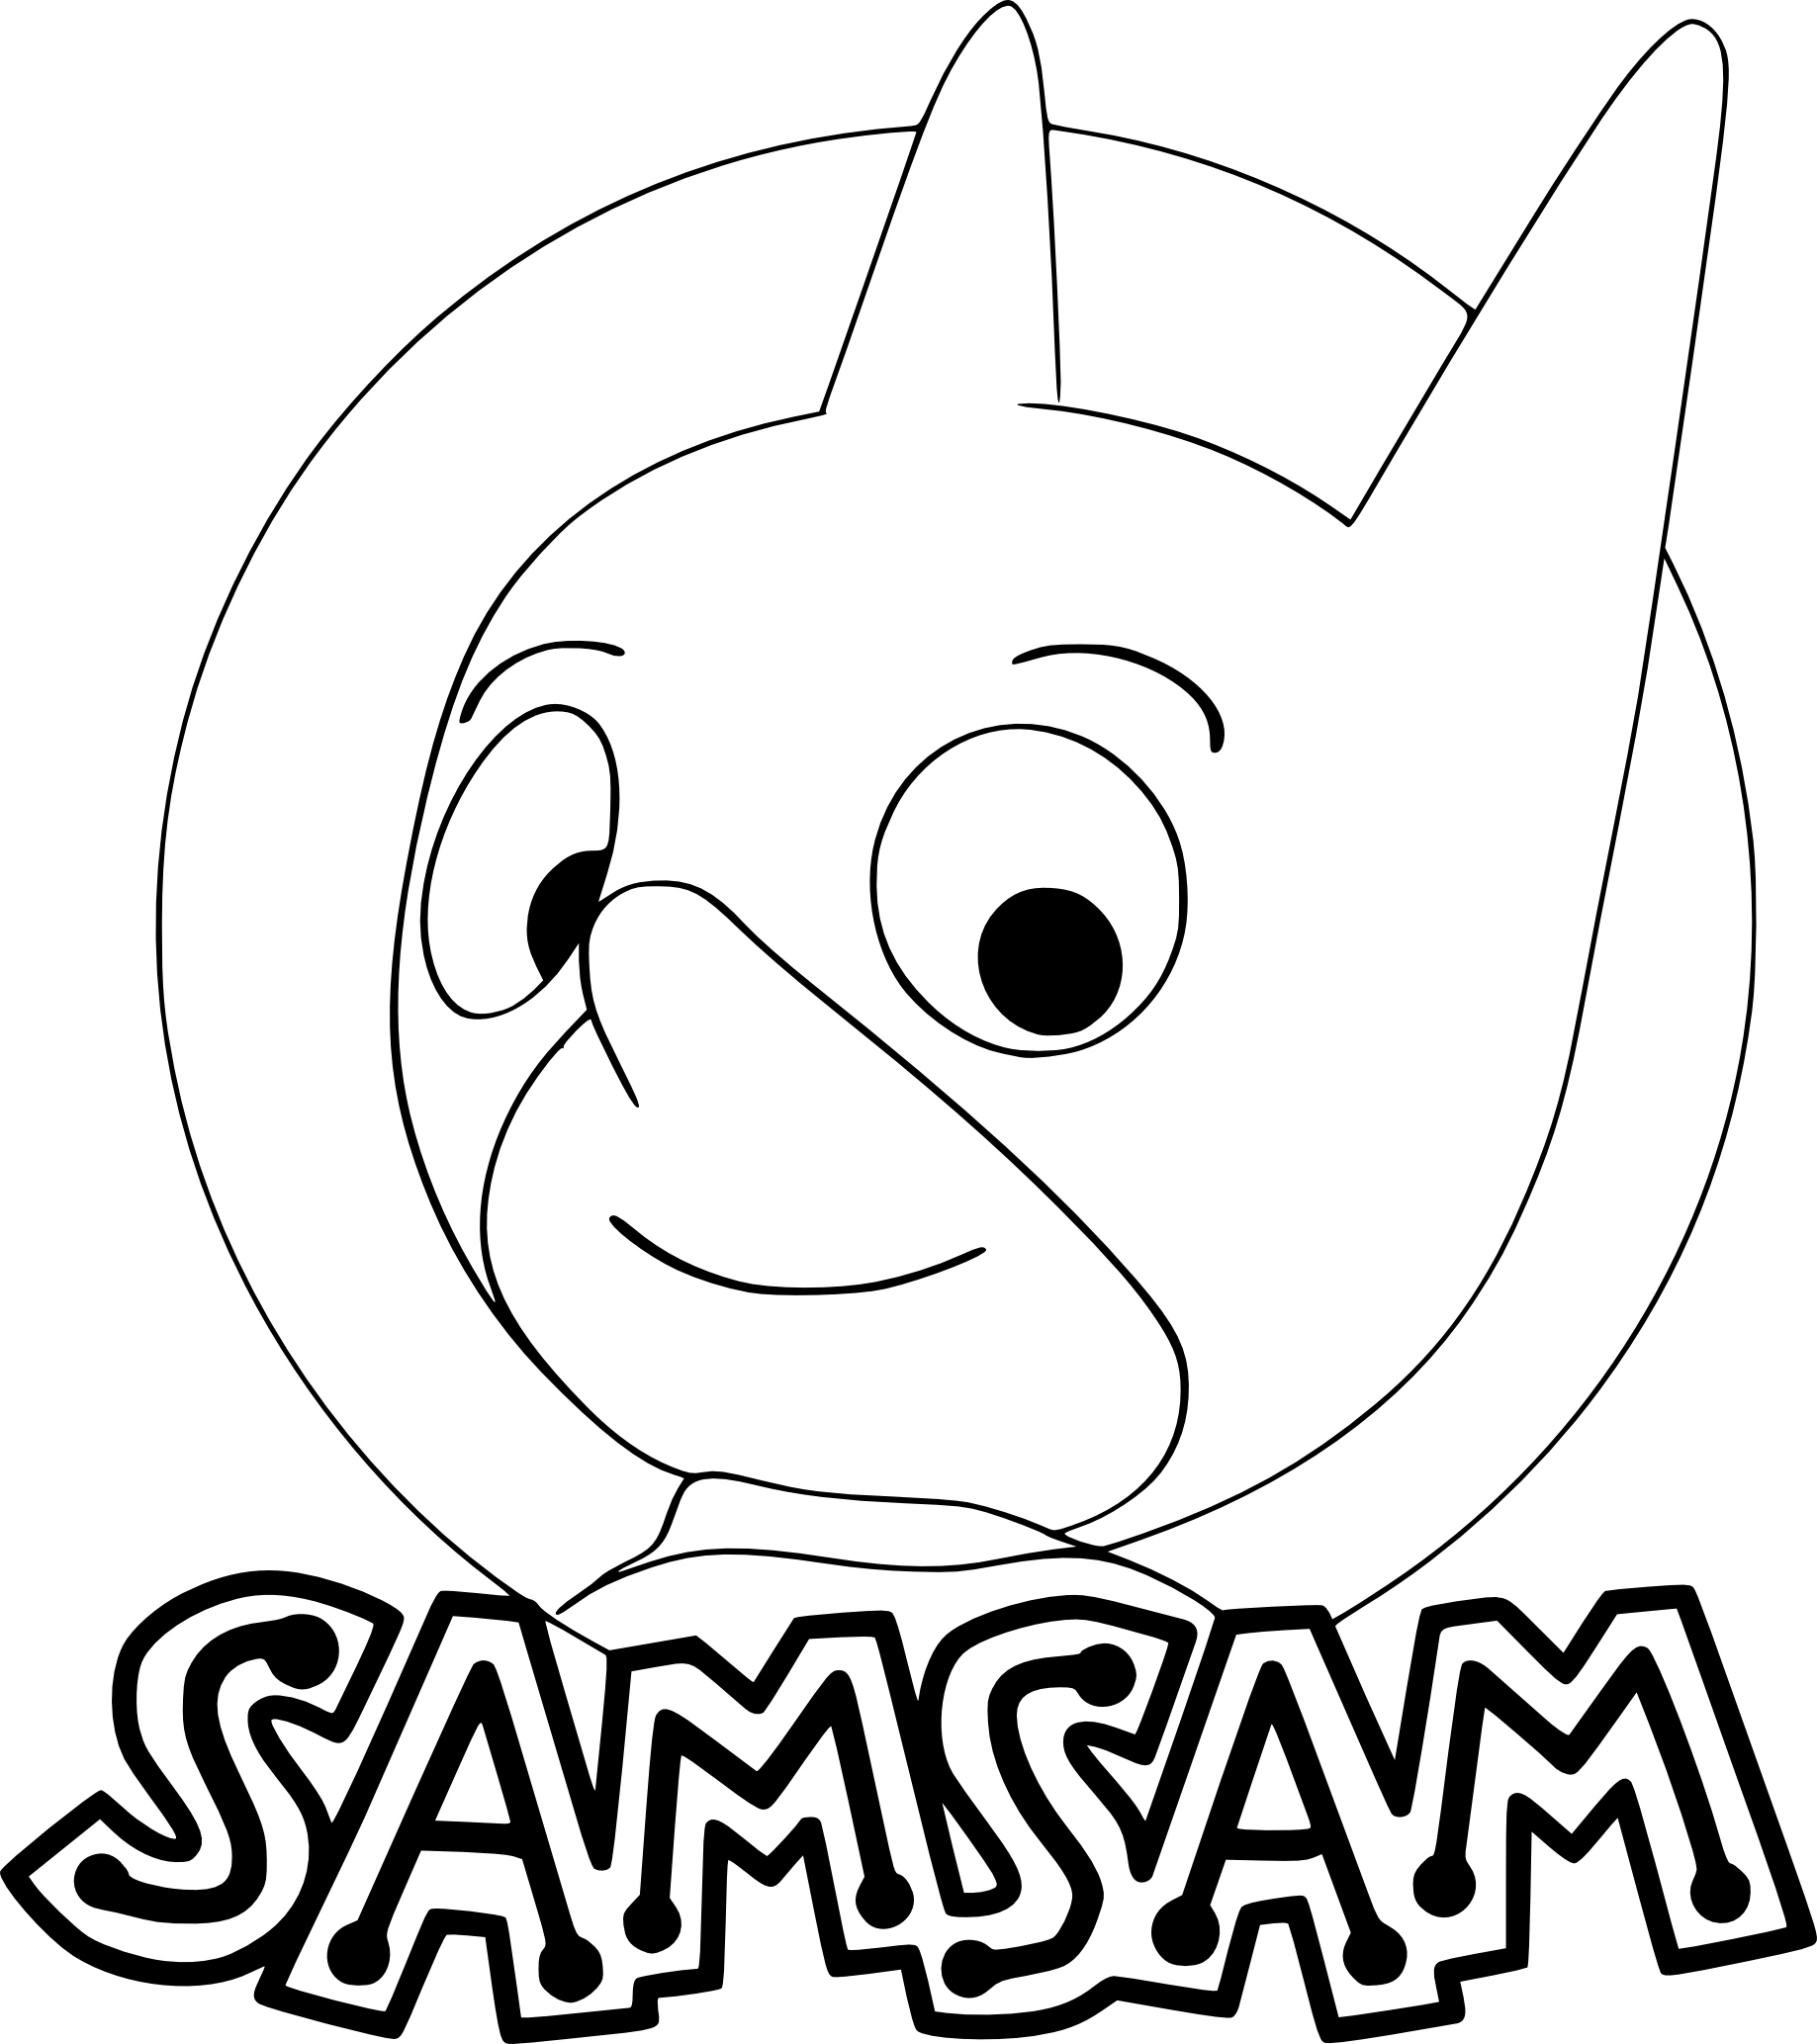 Disegno di Samsam da colorare